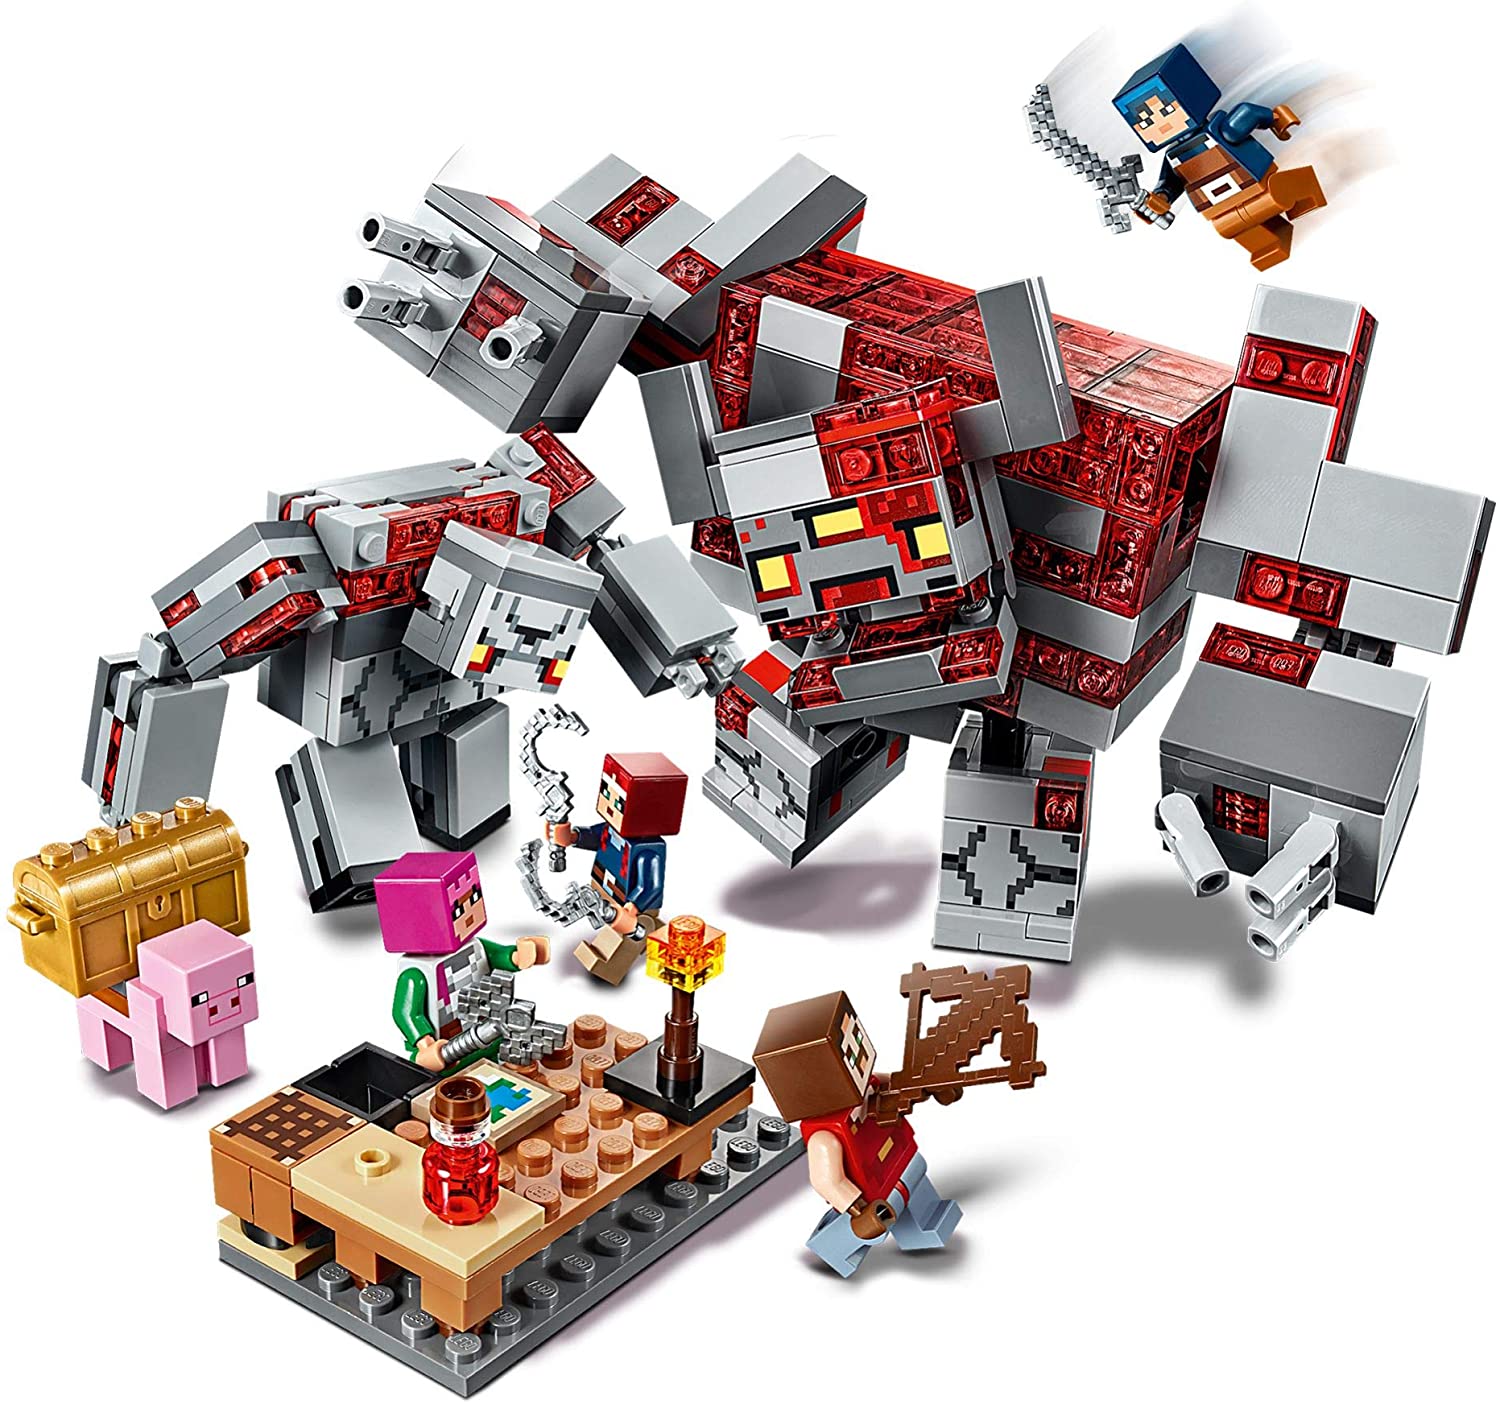 LEGO Minecraft Summer 2020 Sets Revealed on Amazon - The Brick Fan